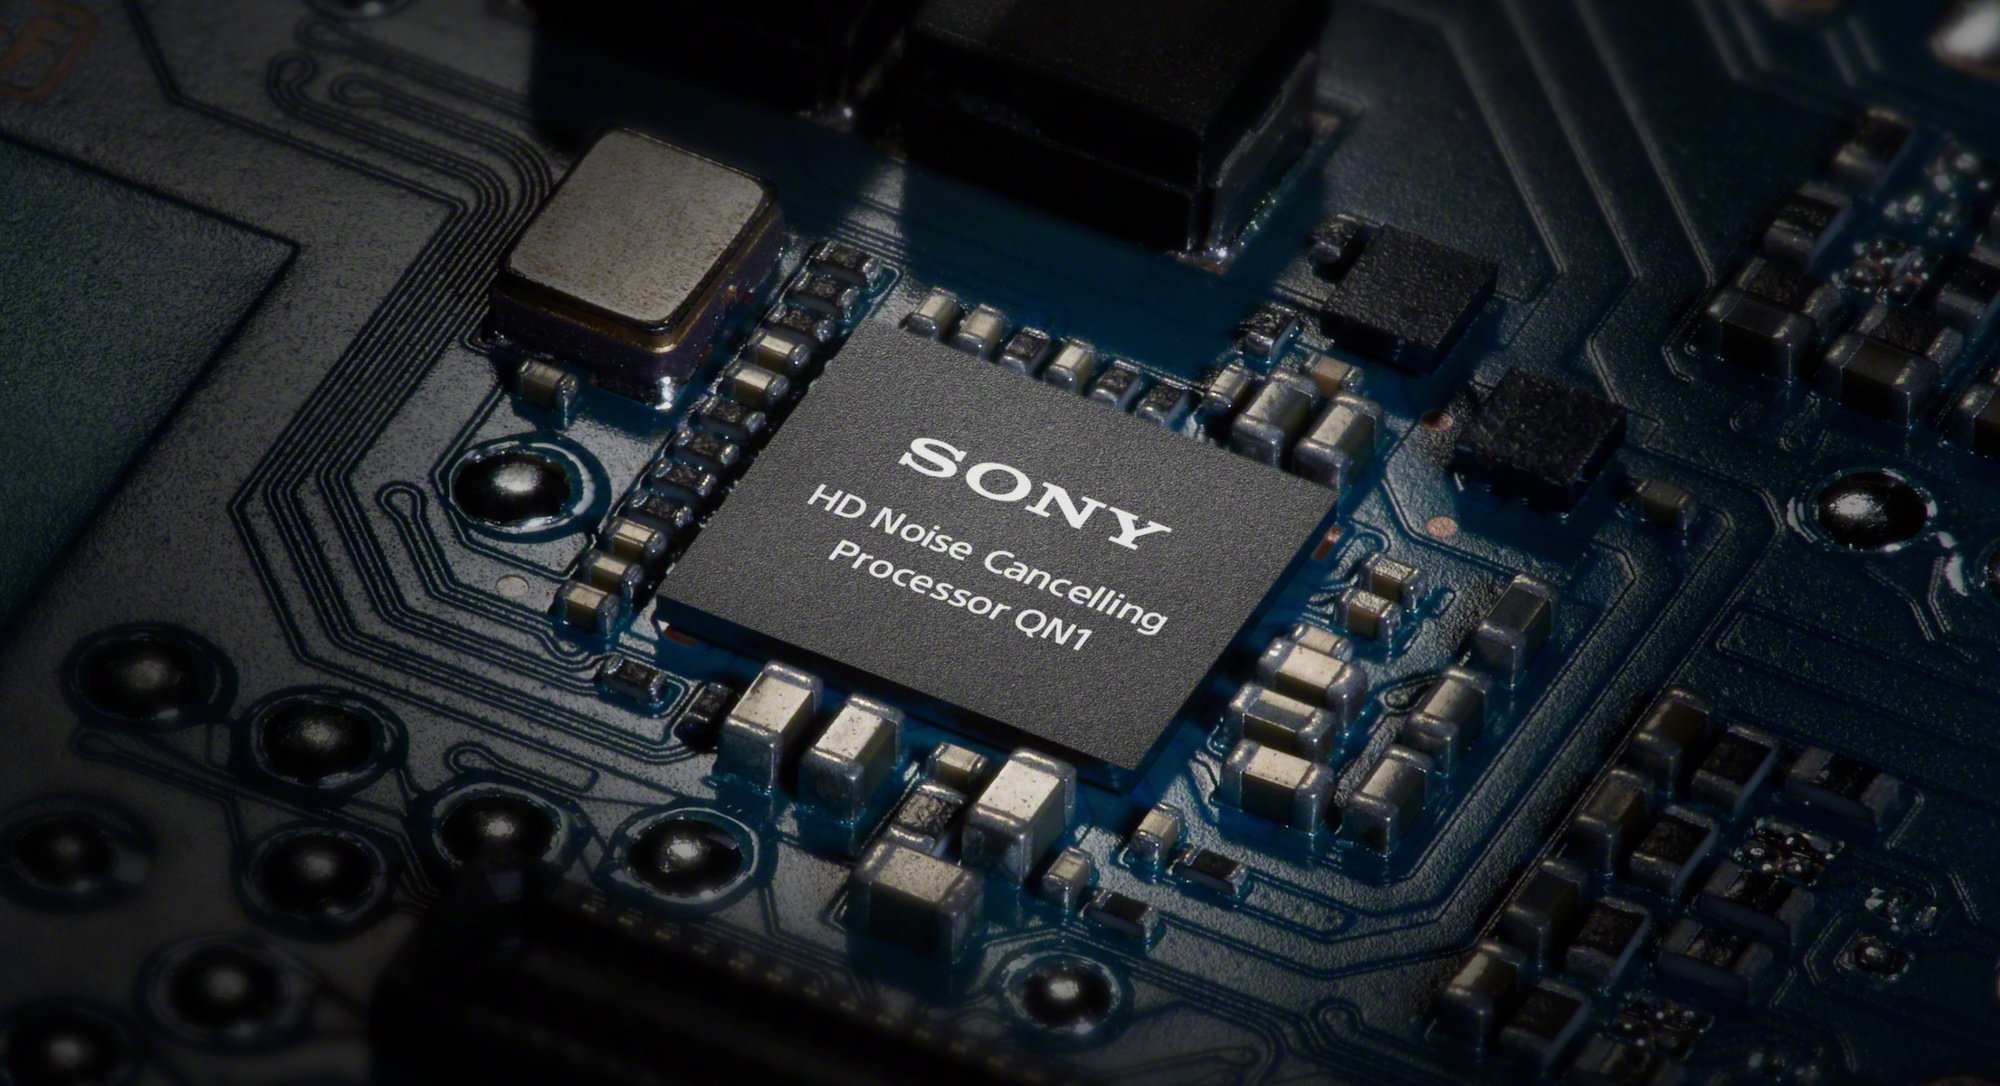 Le processeur HD Noise Cancelling QN1 de Sony., Sony